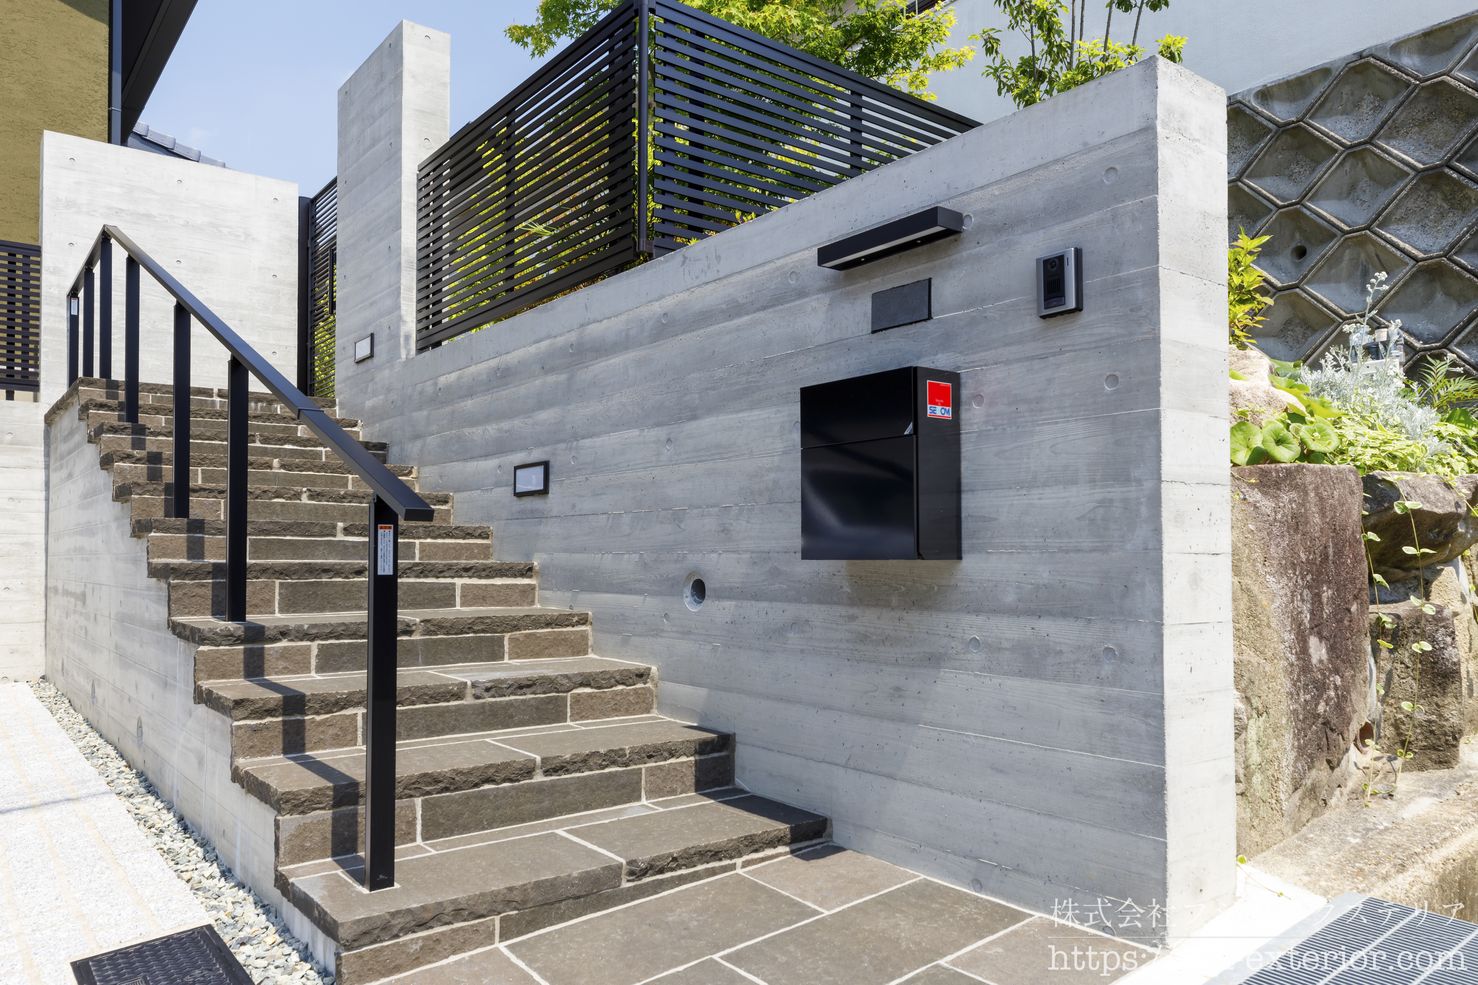 コンクリート 杉板仕上げの門柱と、ブラウン系 タイル張りのアプローチ階段の大阪府の施工実例です。